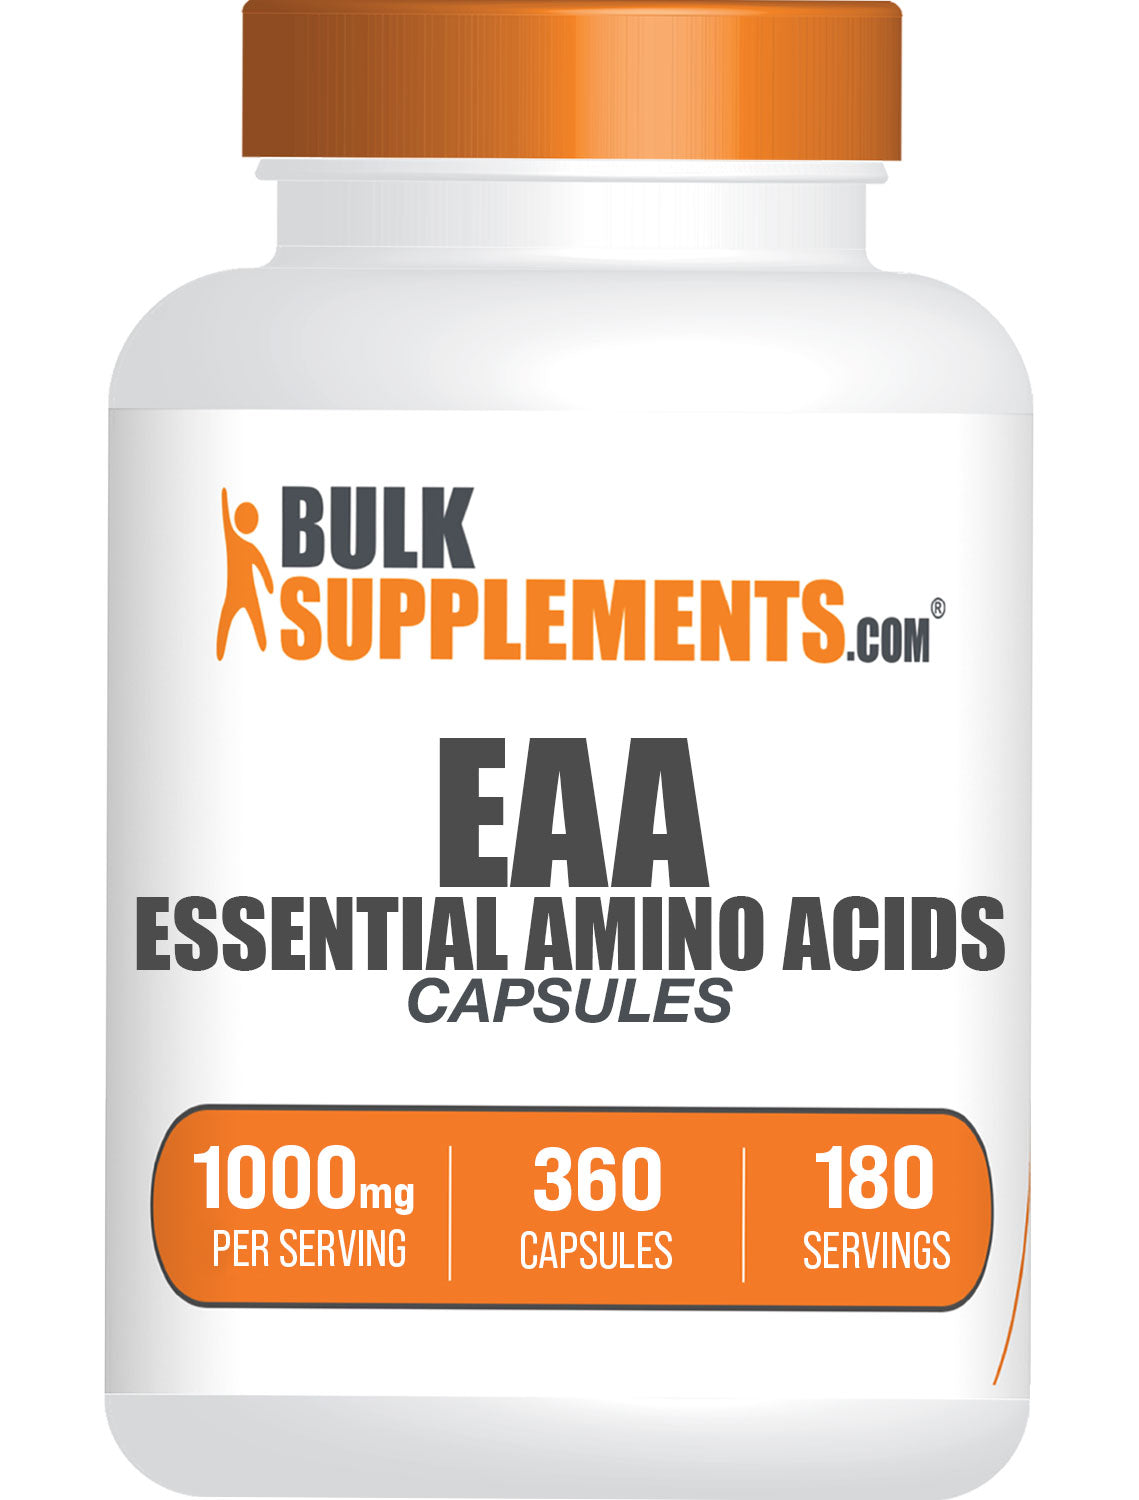 Capsules met essentiële aminozuren (EAA).